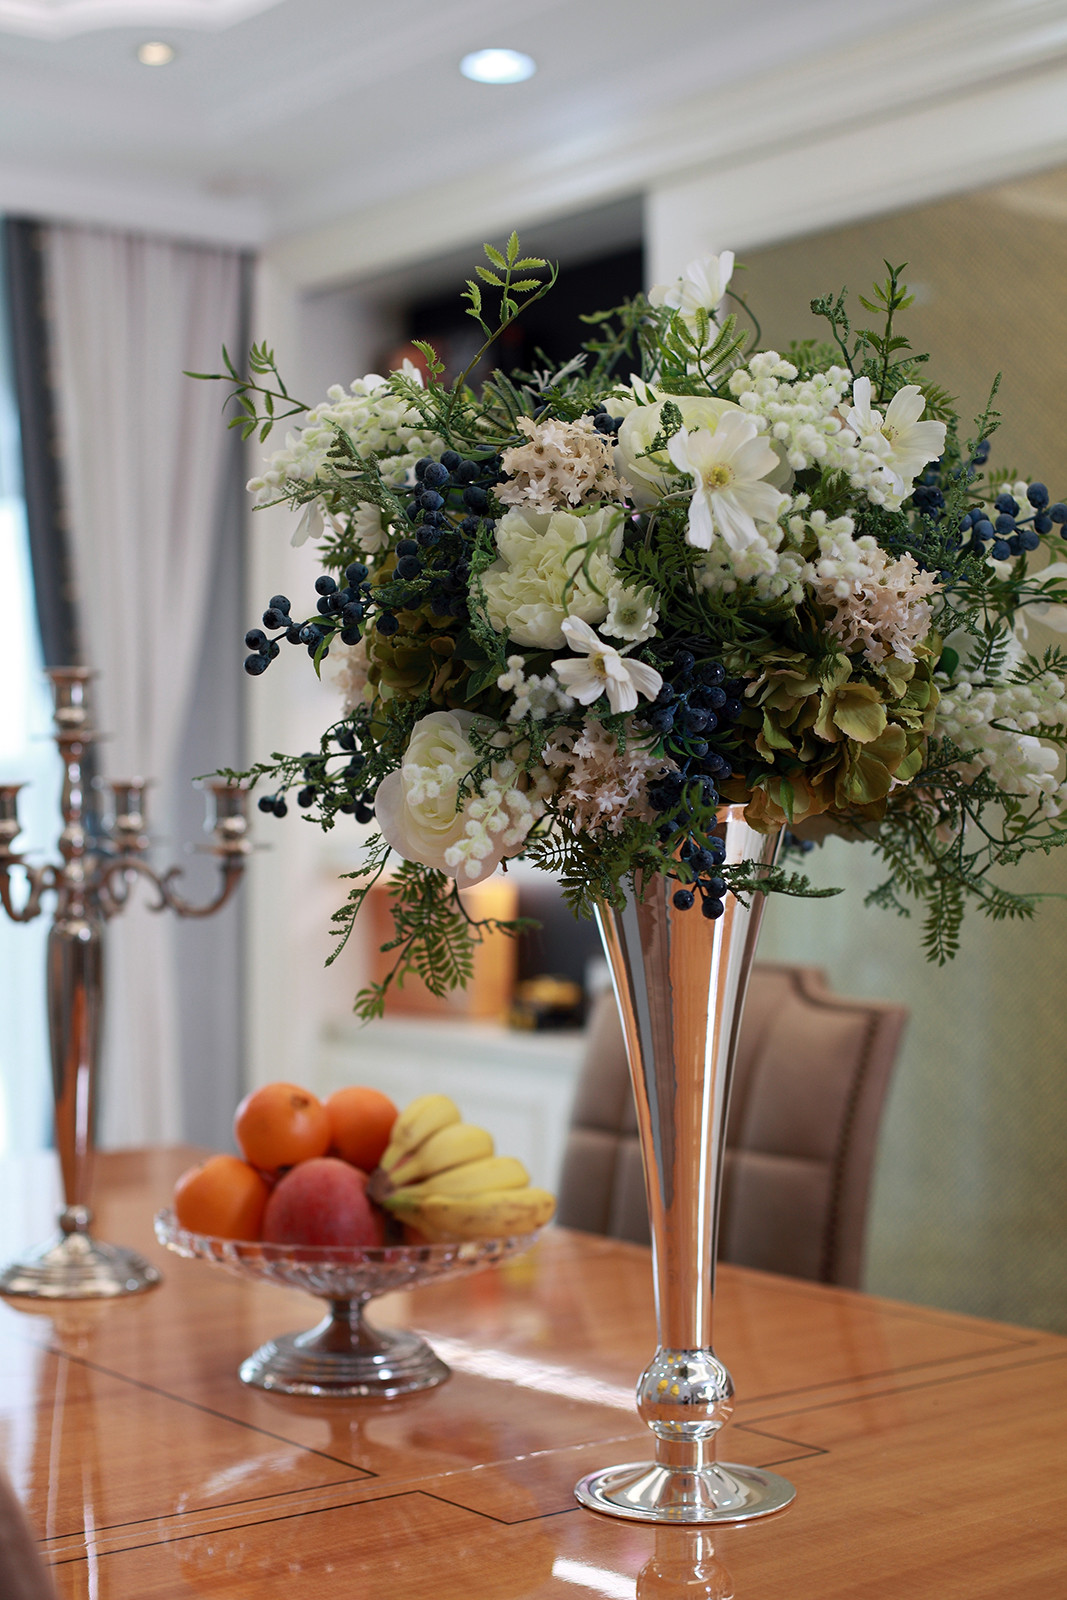 大户型美式装修餐桌装饰花瓶图片